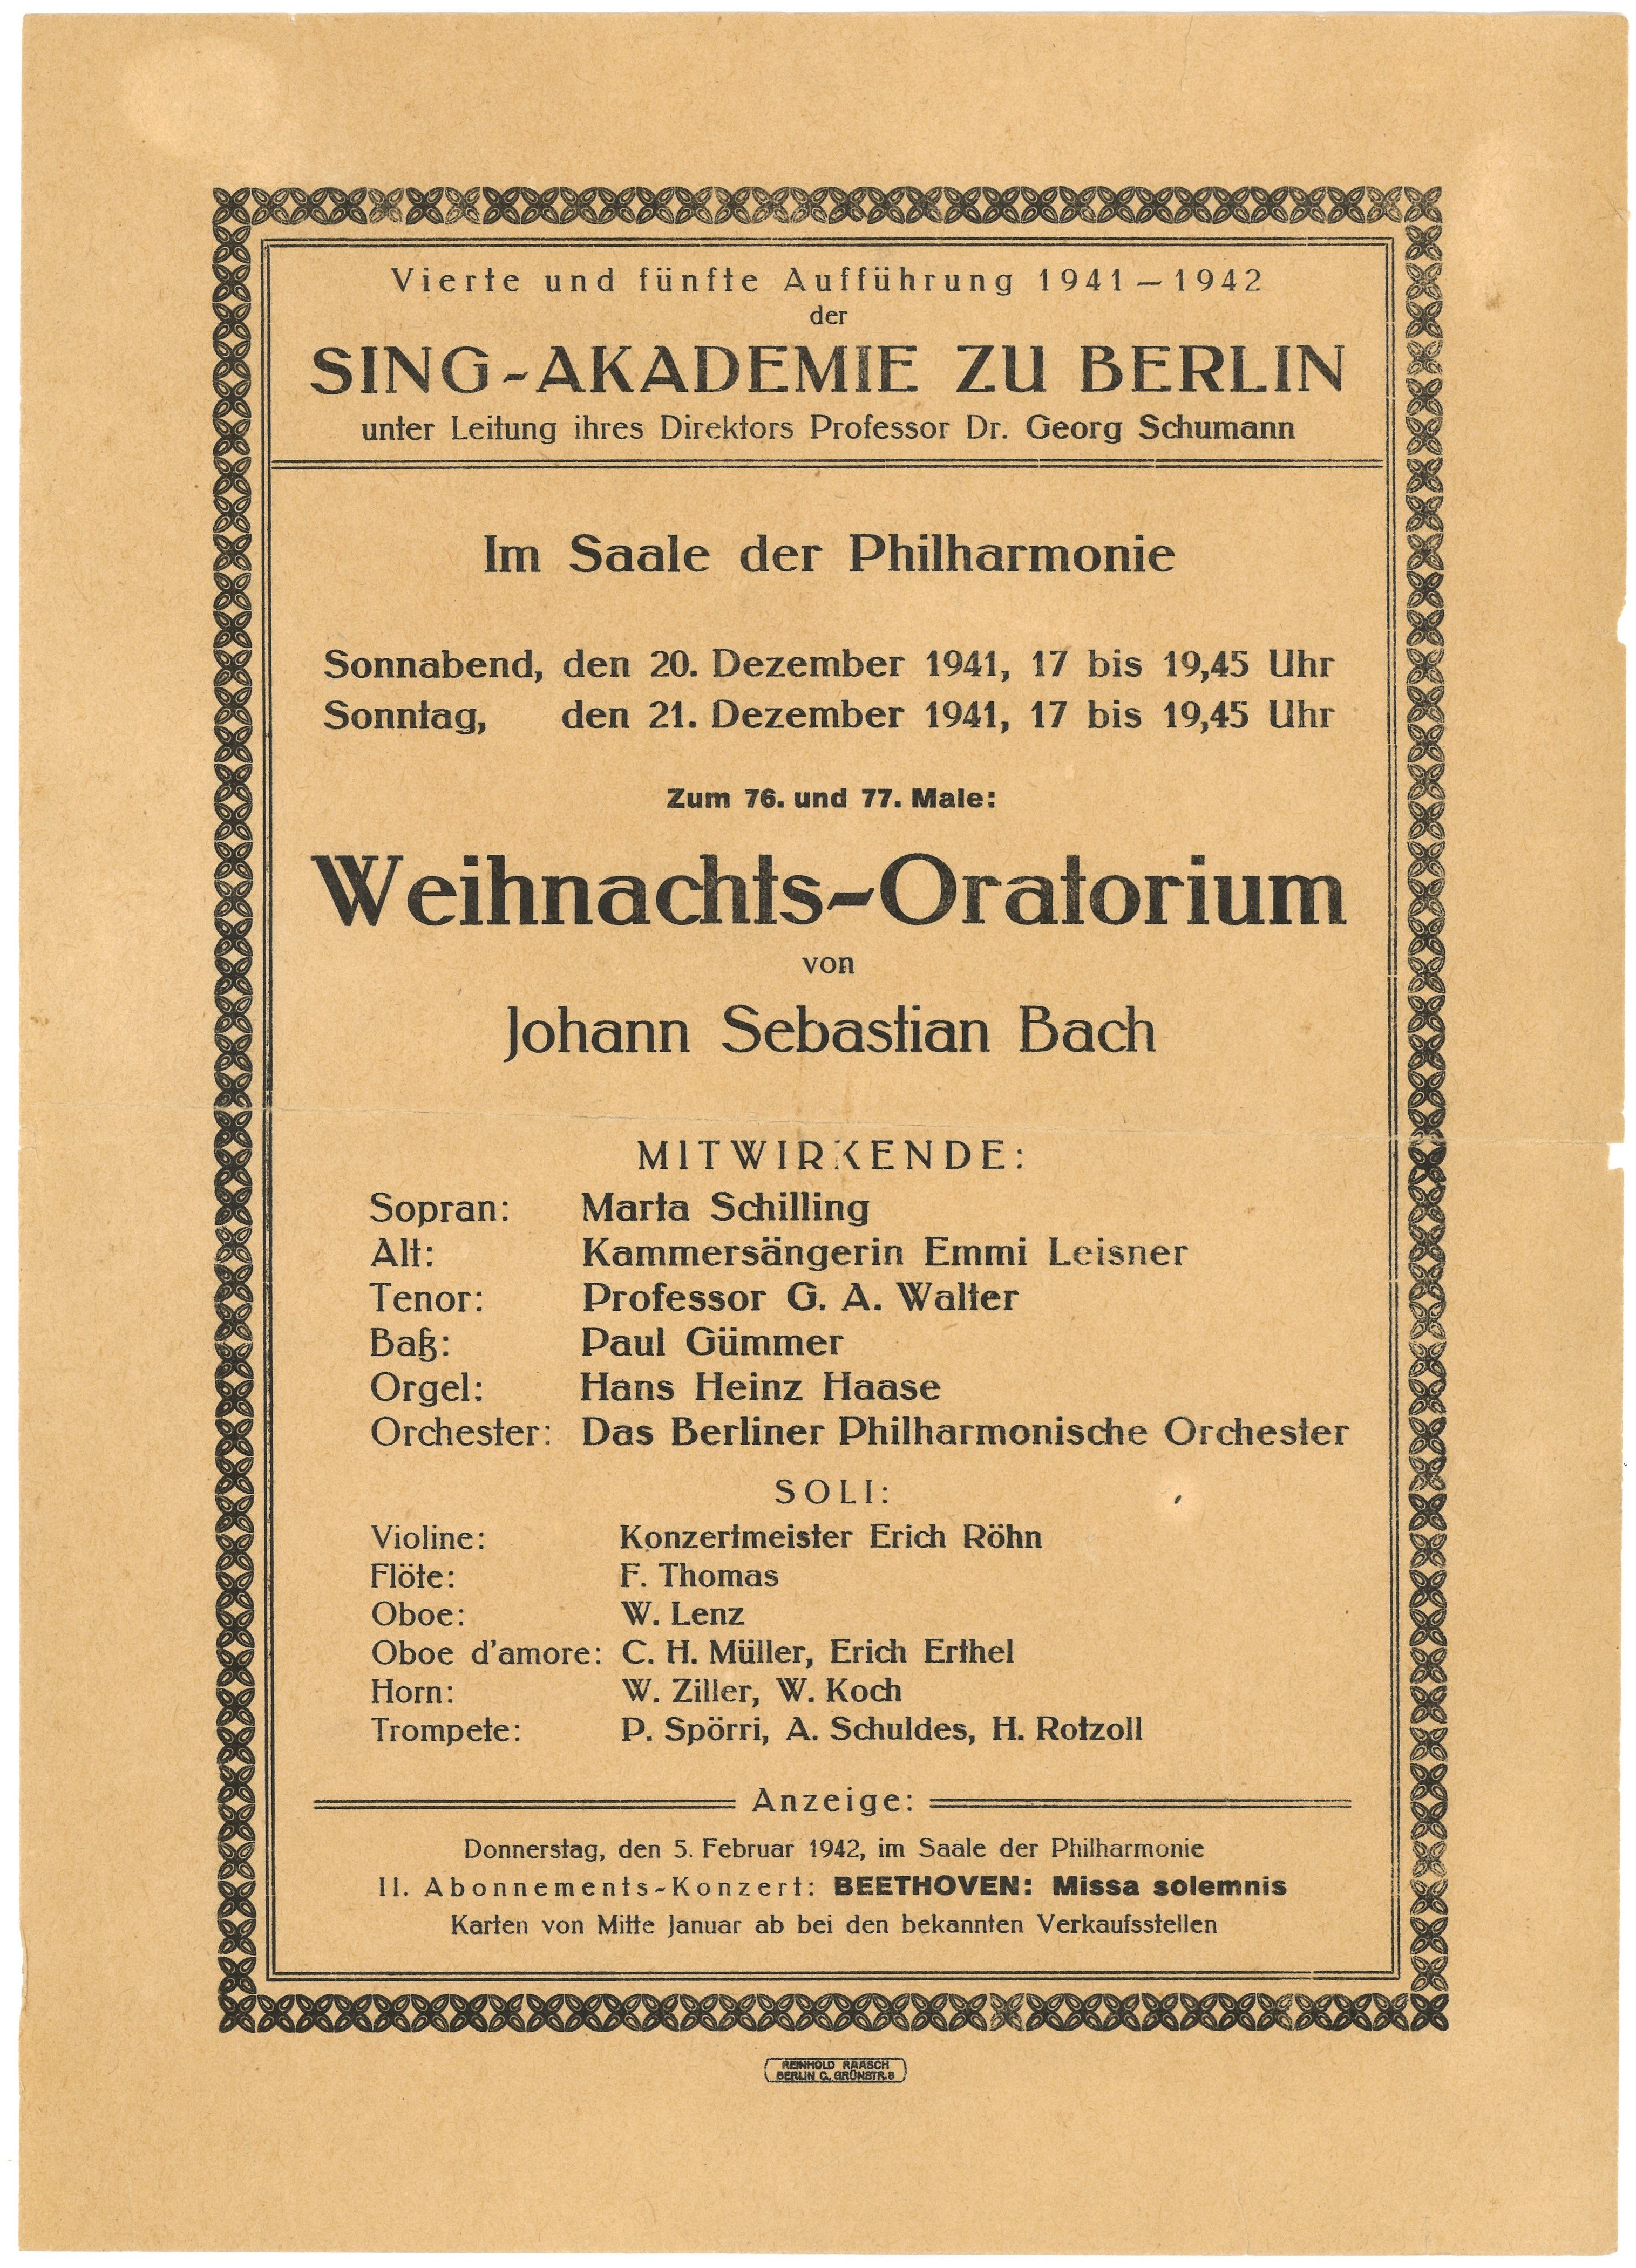 Programm der Sing-Akademie zu Berlin zur Aufführung des Weihnachts-Oratoriums in der Philharmonie 1941 (Landesgeschichtliche Vereinigung für die Mark Brandenburg e.V., Archiv CC BY)